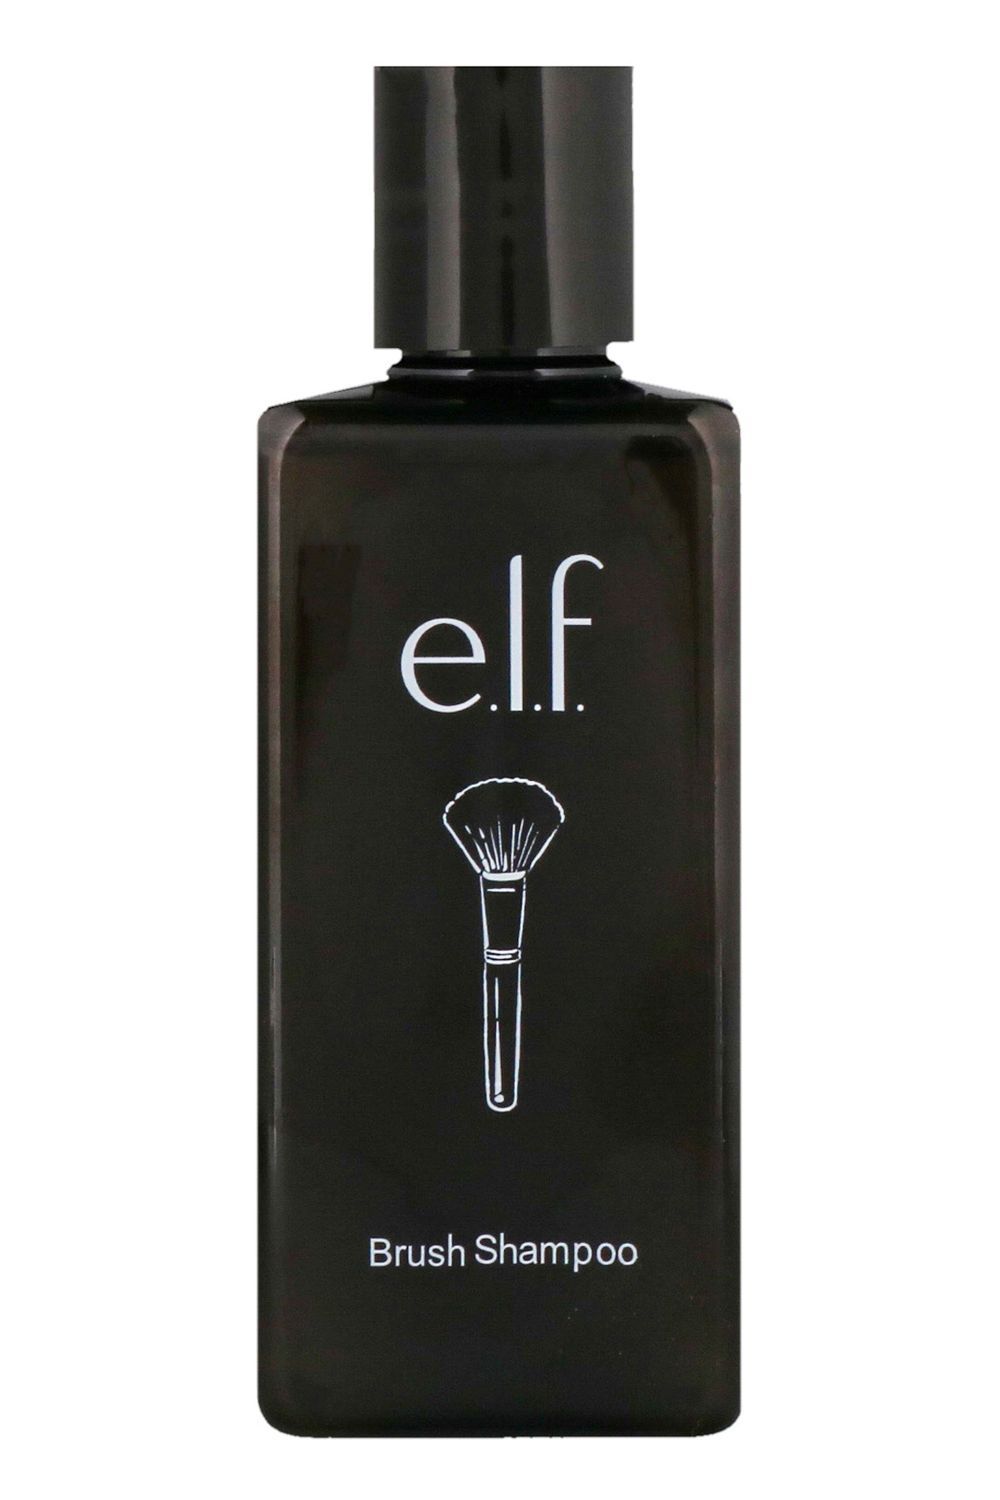 E.l.f. Brush Shampoo